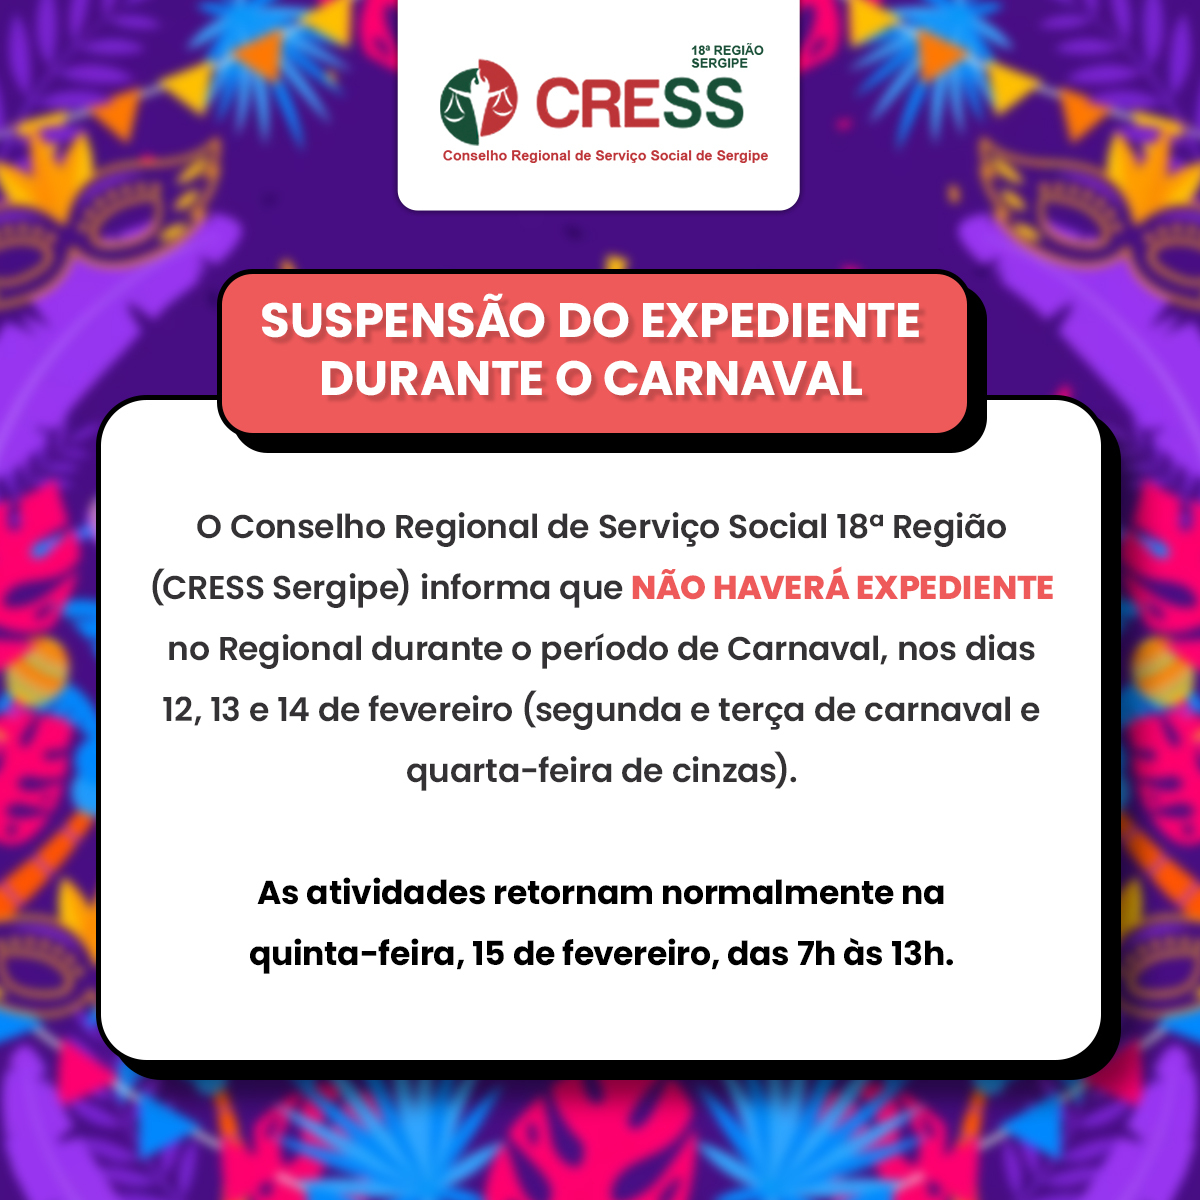 CRESS-SE comunica suspensão de expediente no período de Carnaval